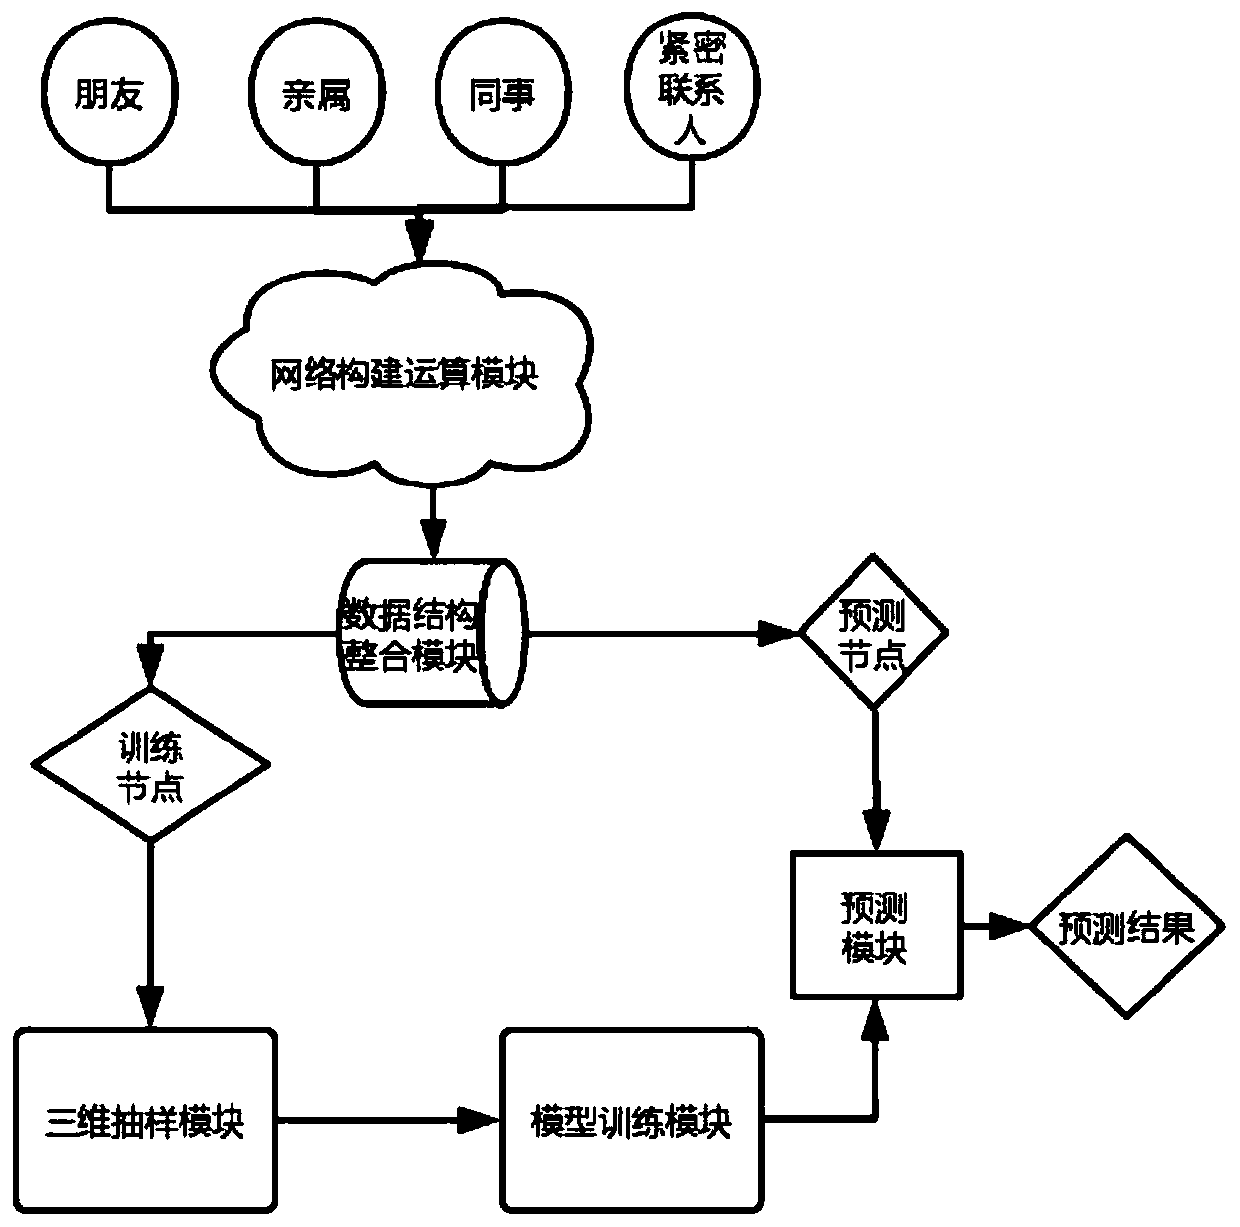 Target node key information filling method and system based on association network